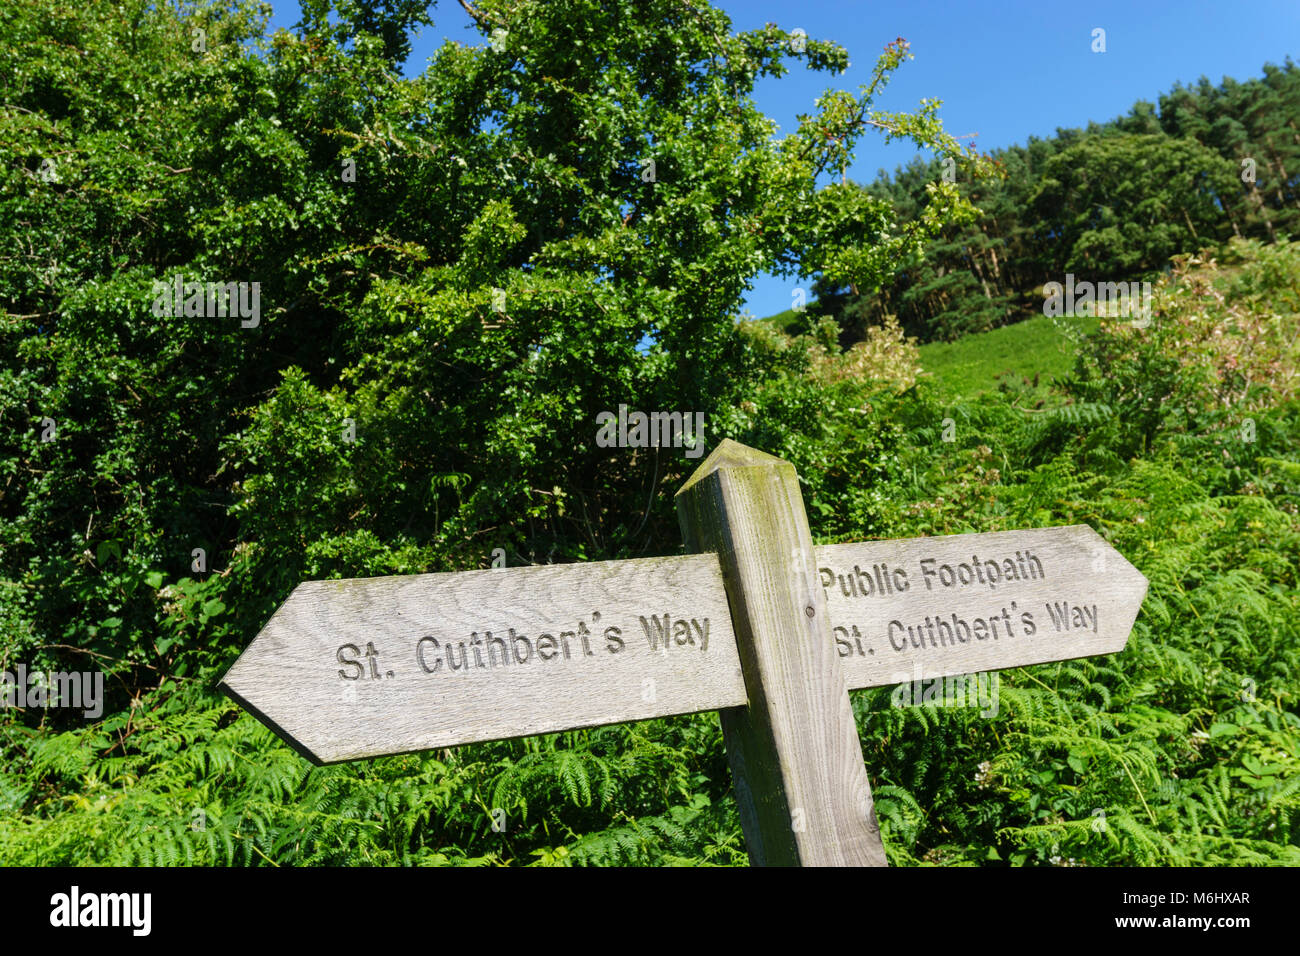 St Cuthbert's Way, Northumberland, balade à vélo. Panneau routier près de Chatton. Banque D'Images